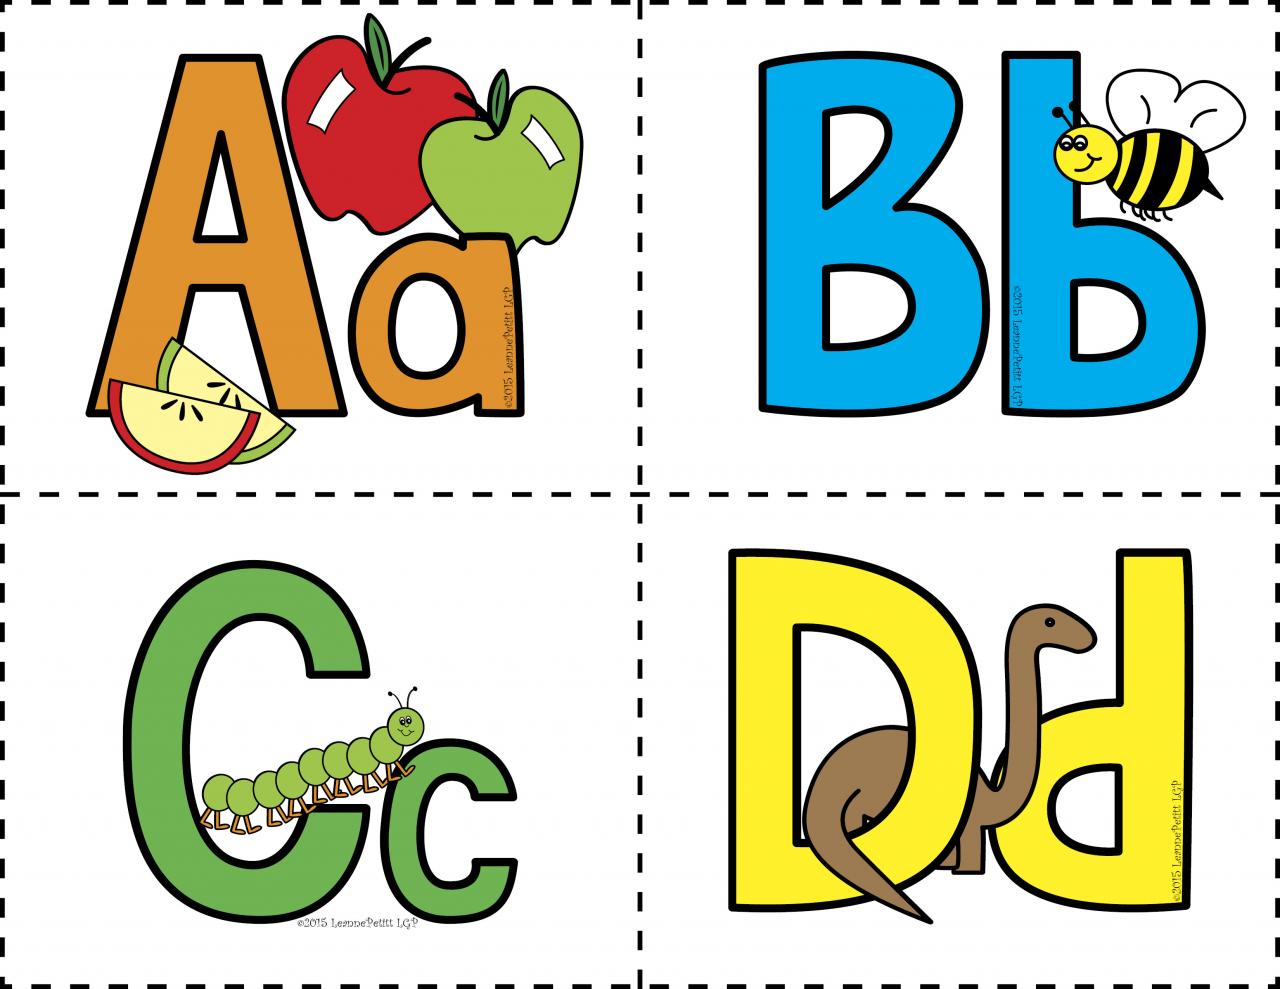 По английски а б в г. Английские буквы для детей. ABC карточки. Английский алфавит для детей карточки. Буквы английского алфавита для детей.